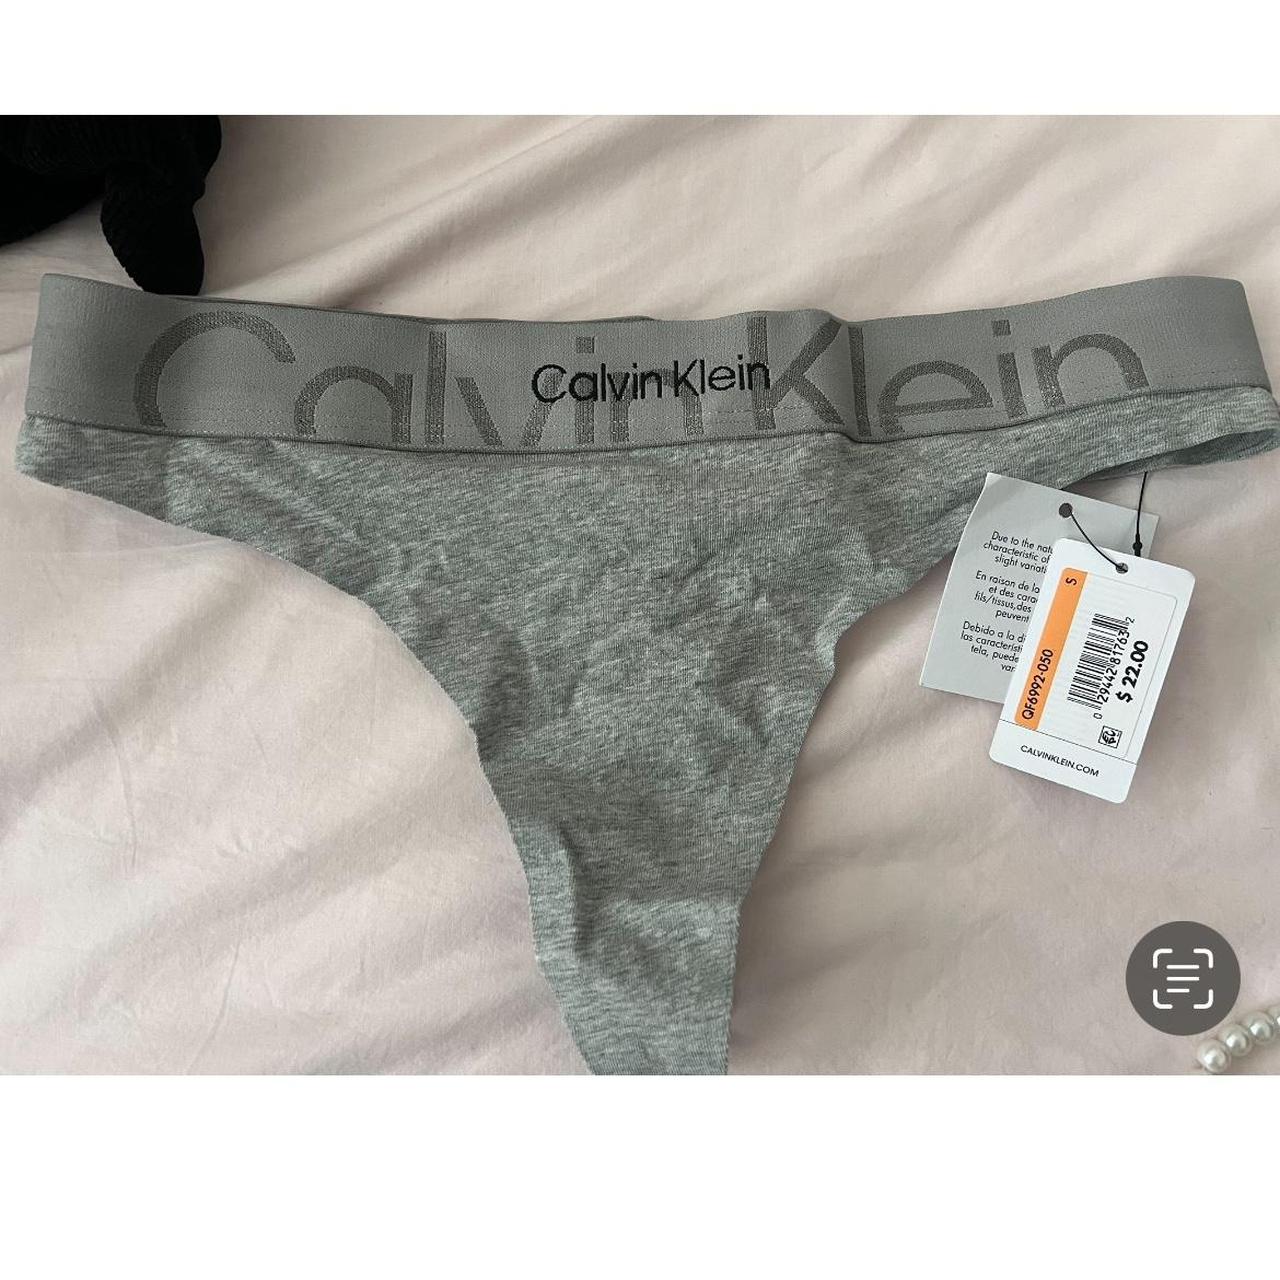 Calvin Klein sheer unlined bra in periwinkle - Depop